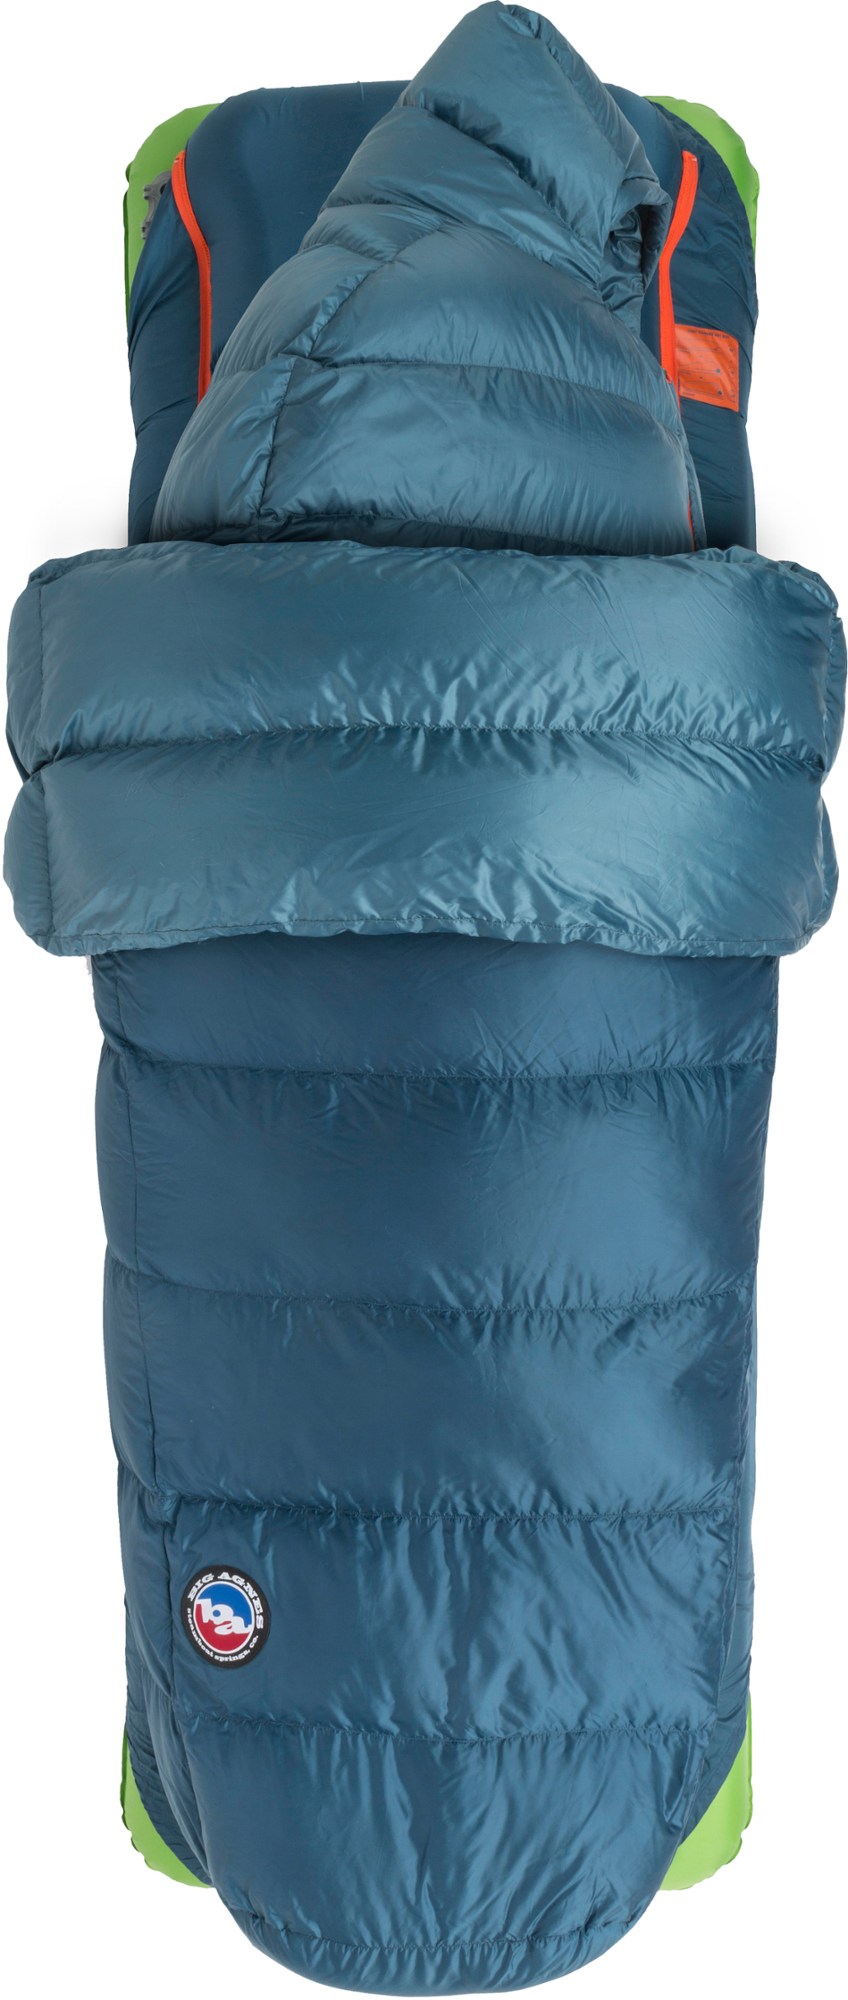 спальный коврик хинман big agnes синий Пропавший рейнджер 3N1 0 Спальный мешок Big Agnes, синий